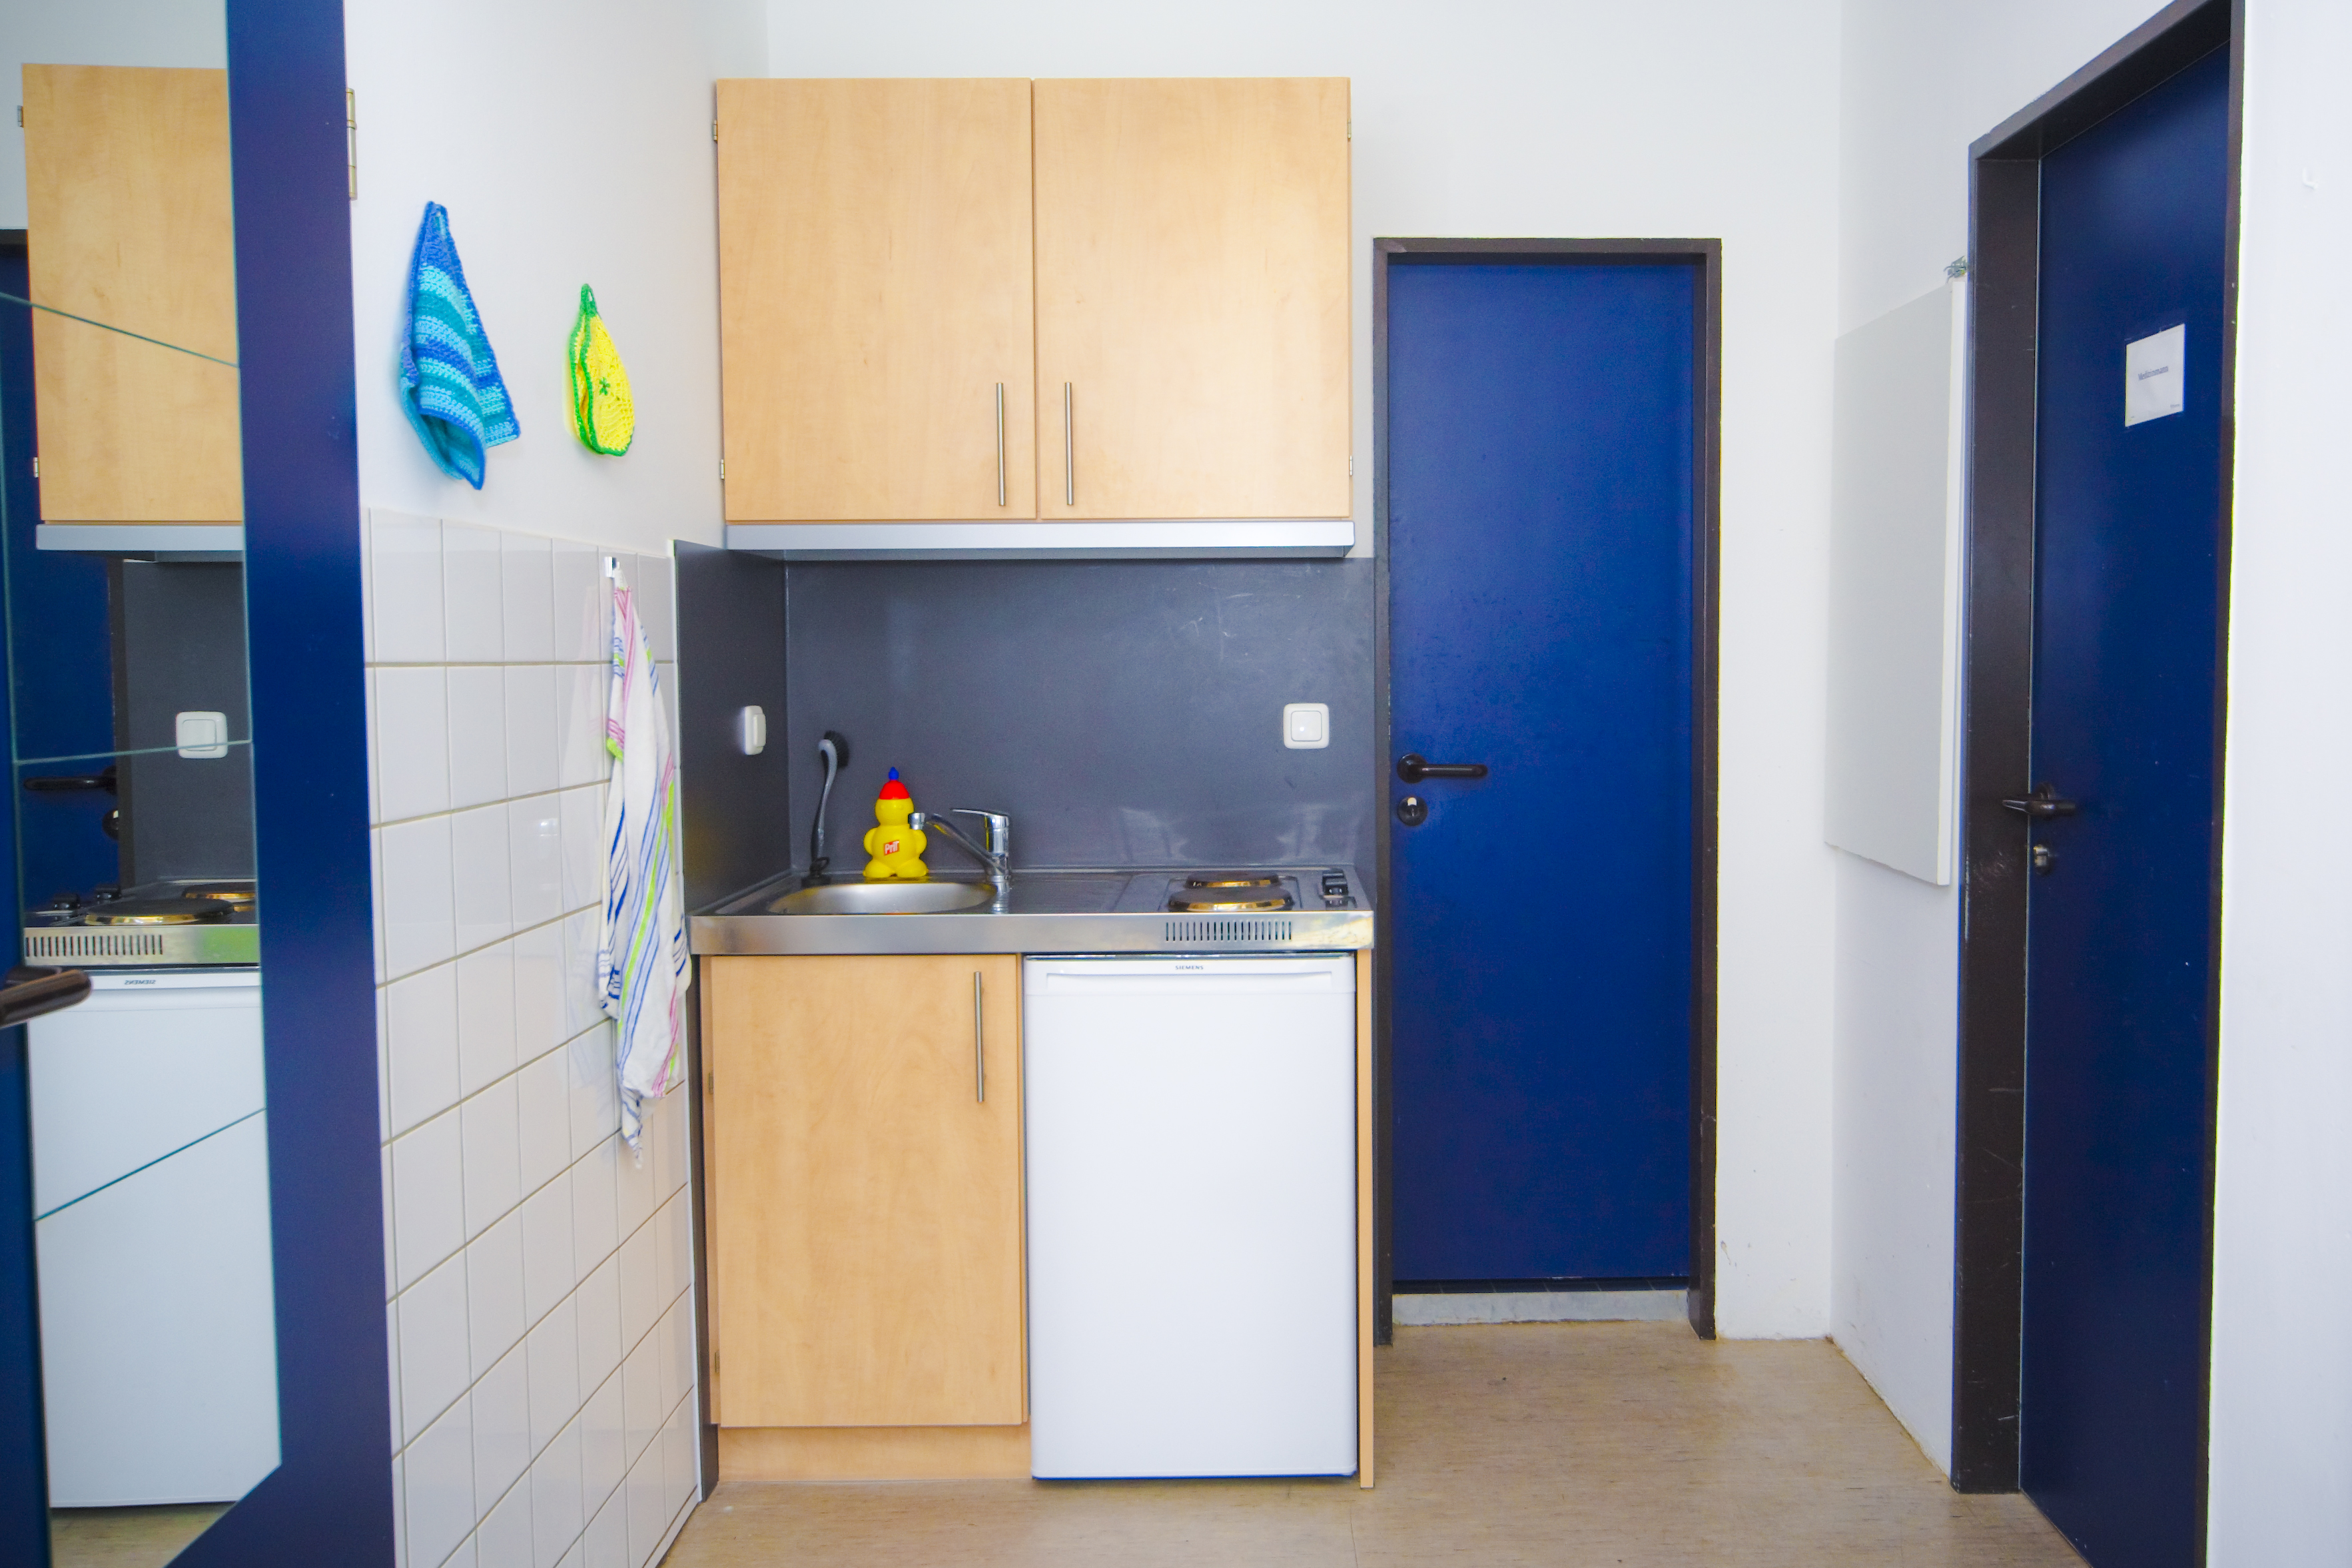 Eine Küchenzeile im Wohnheim der Karl-Wiechert-Allee